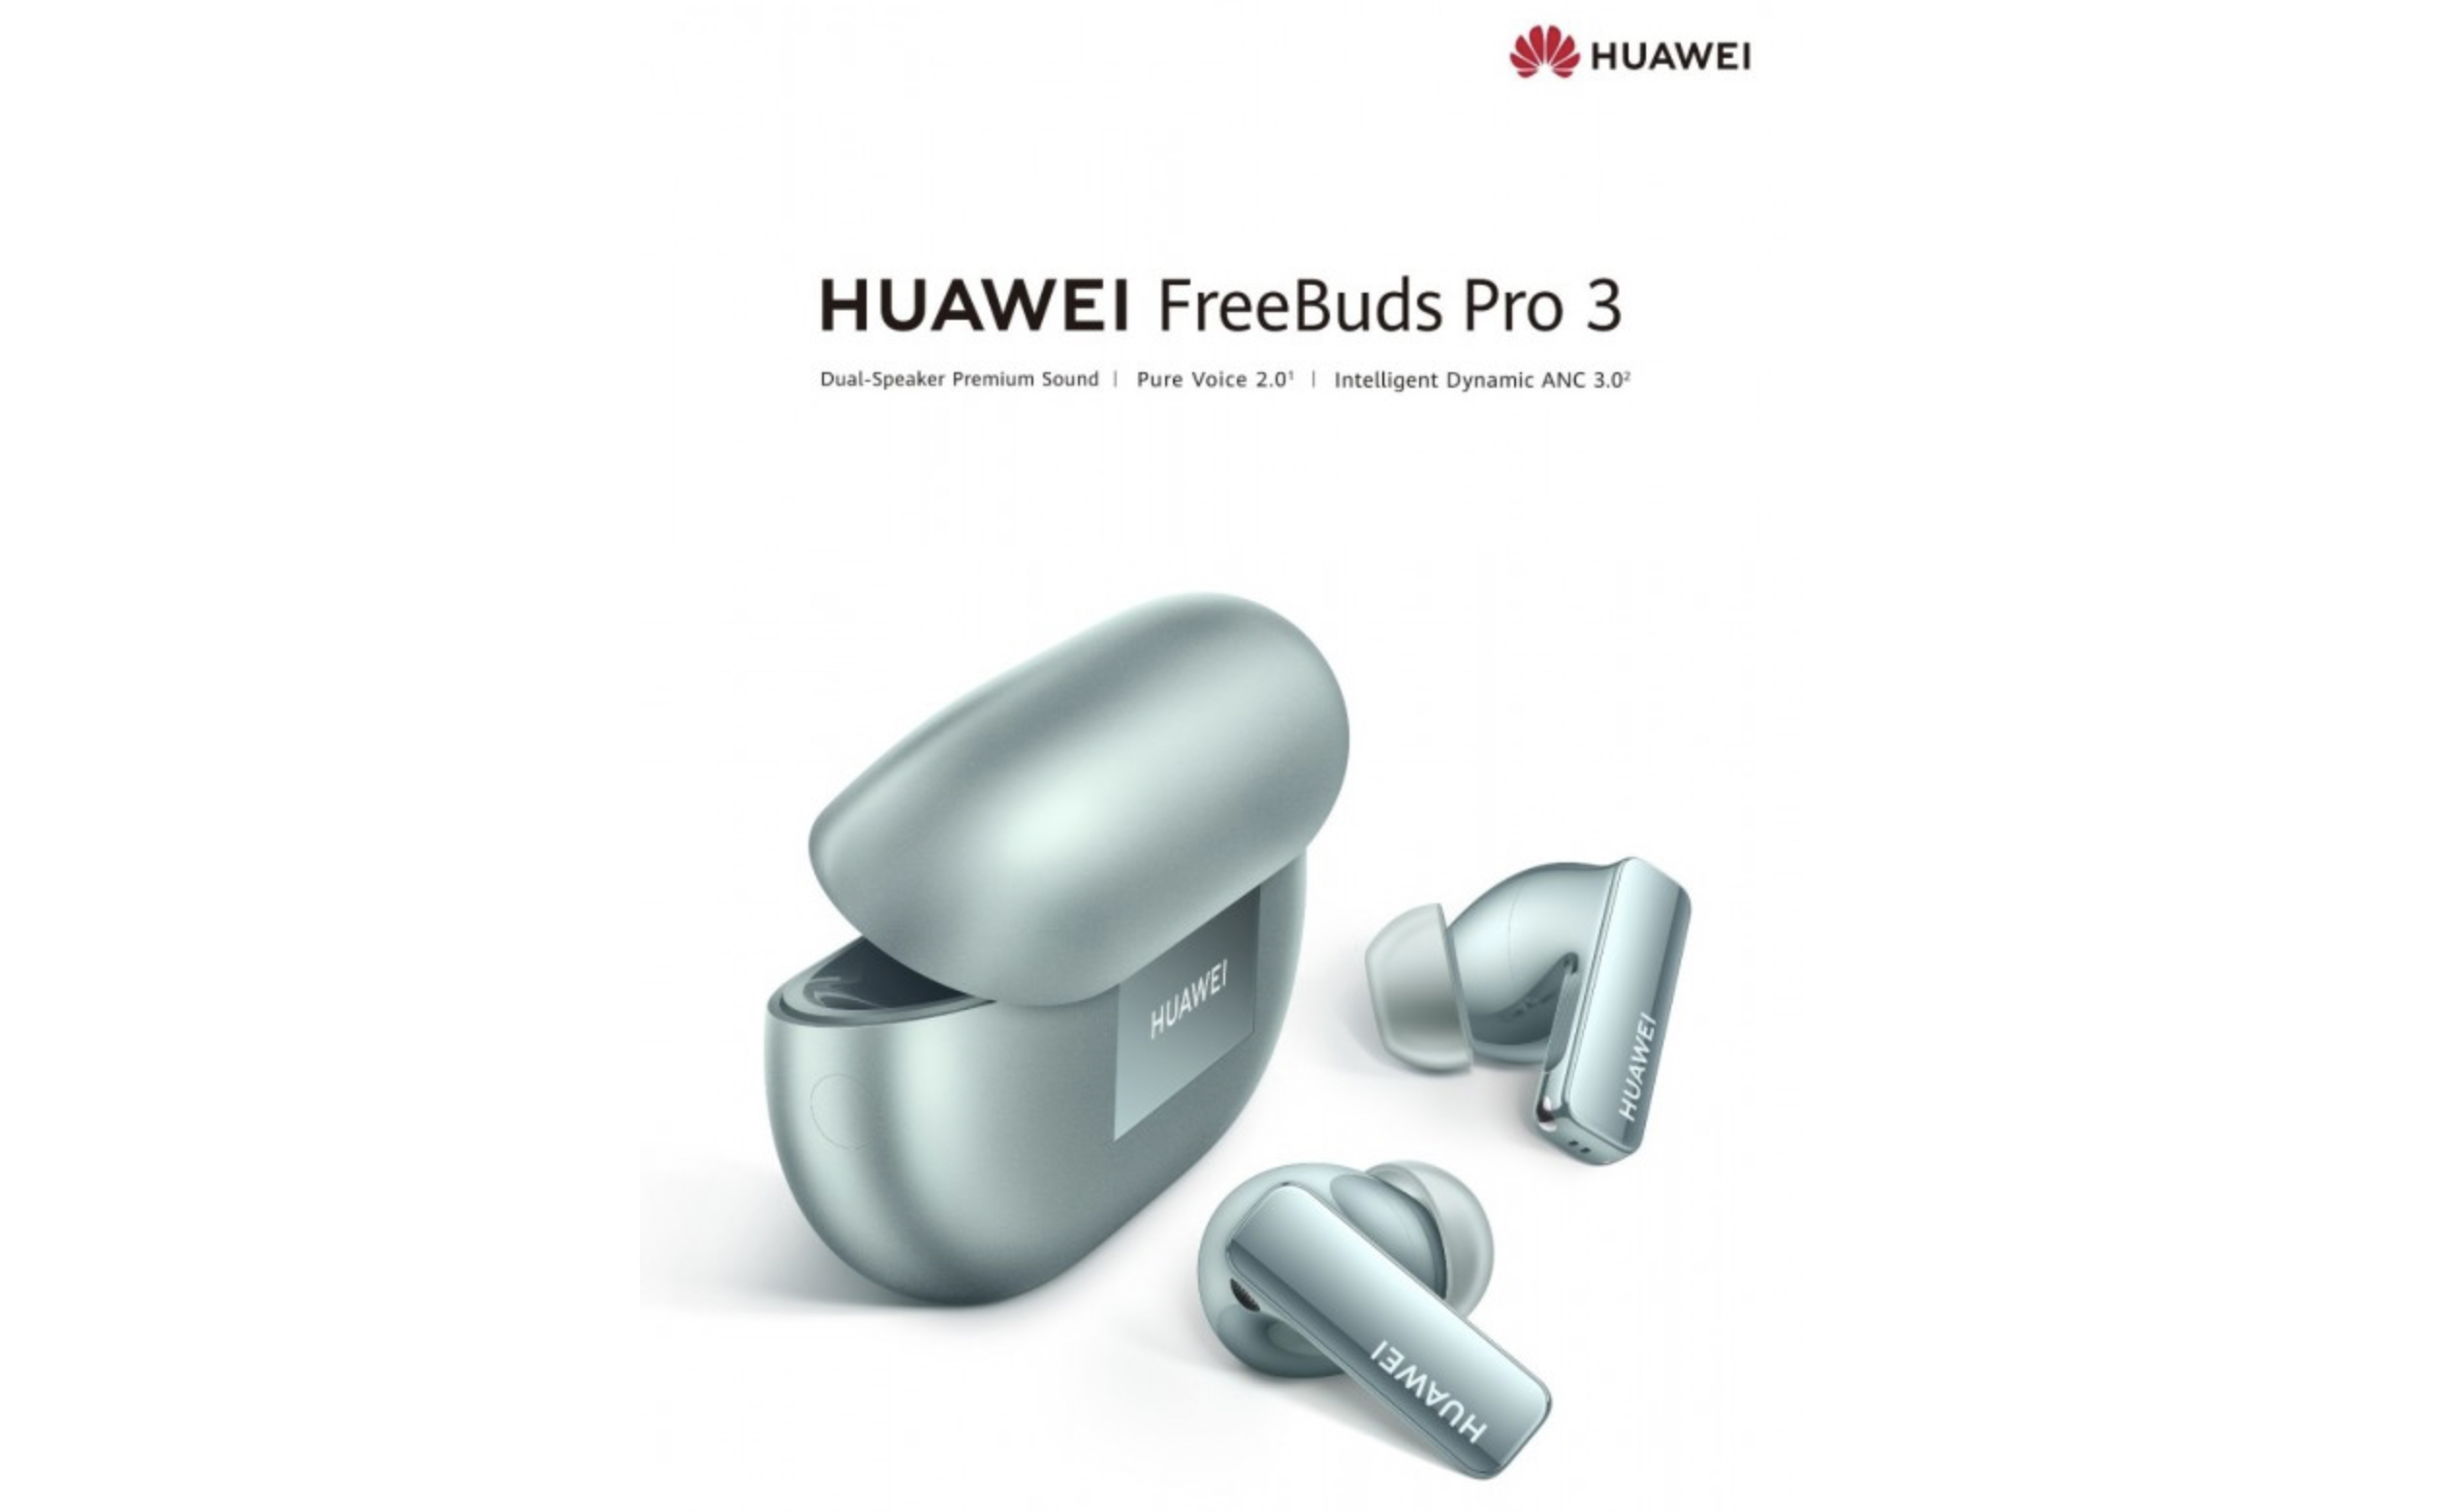 صورة تعرفوا على منتجات هواوي المعلن عنها حديثا وأهمها HUAWEI FreeBuds Pro 3